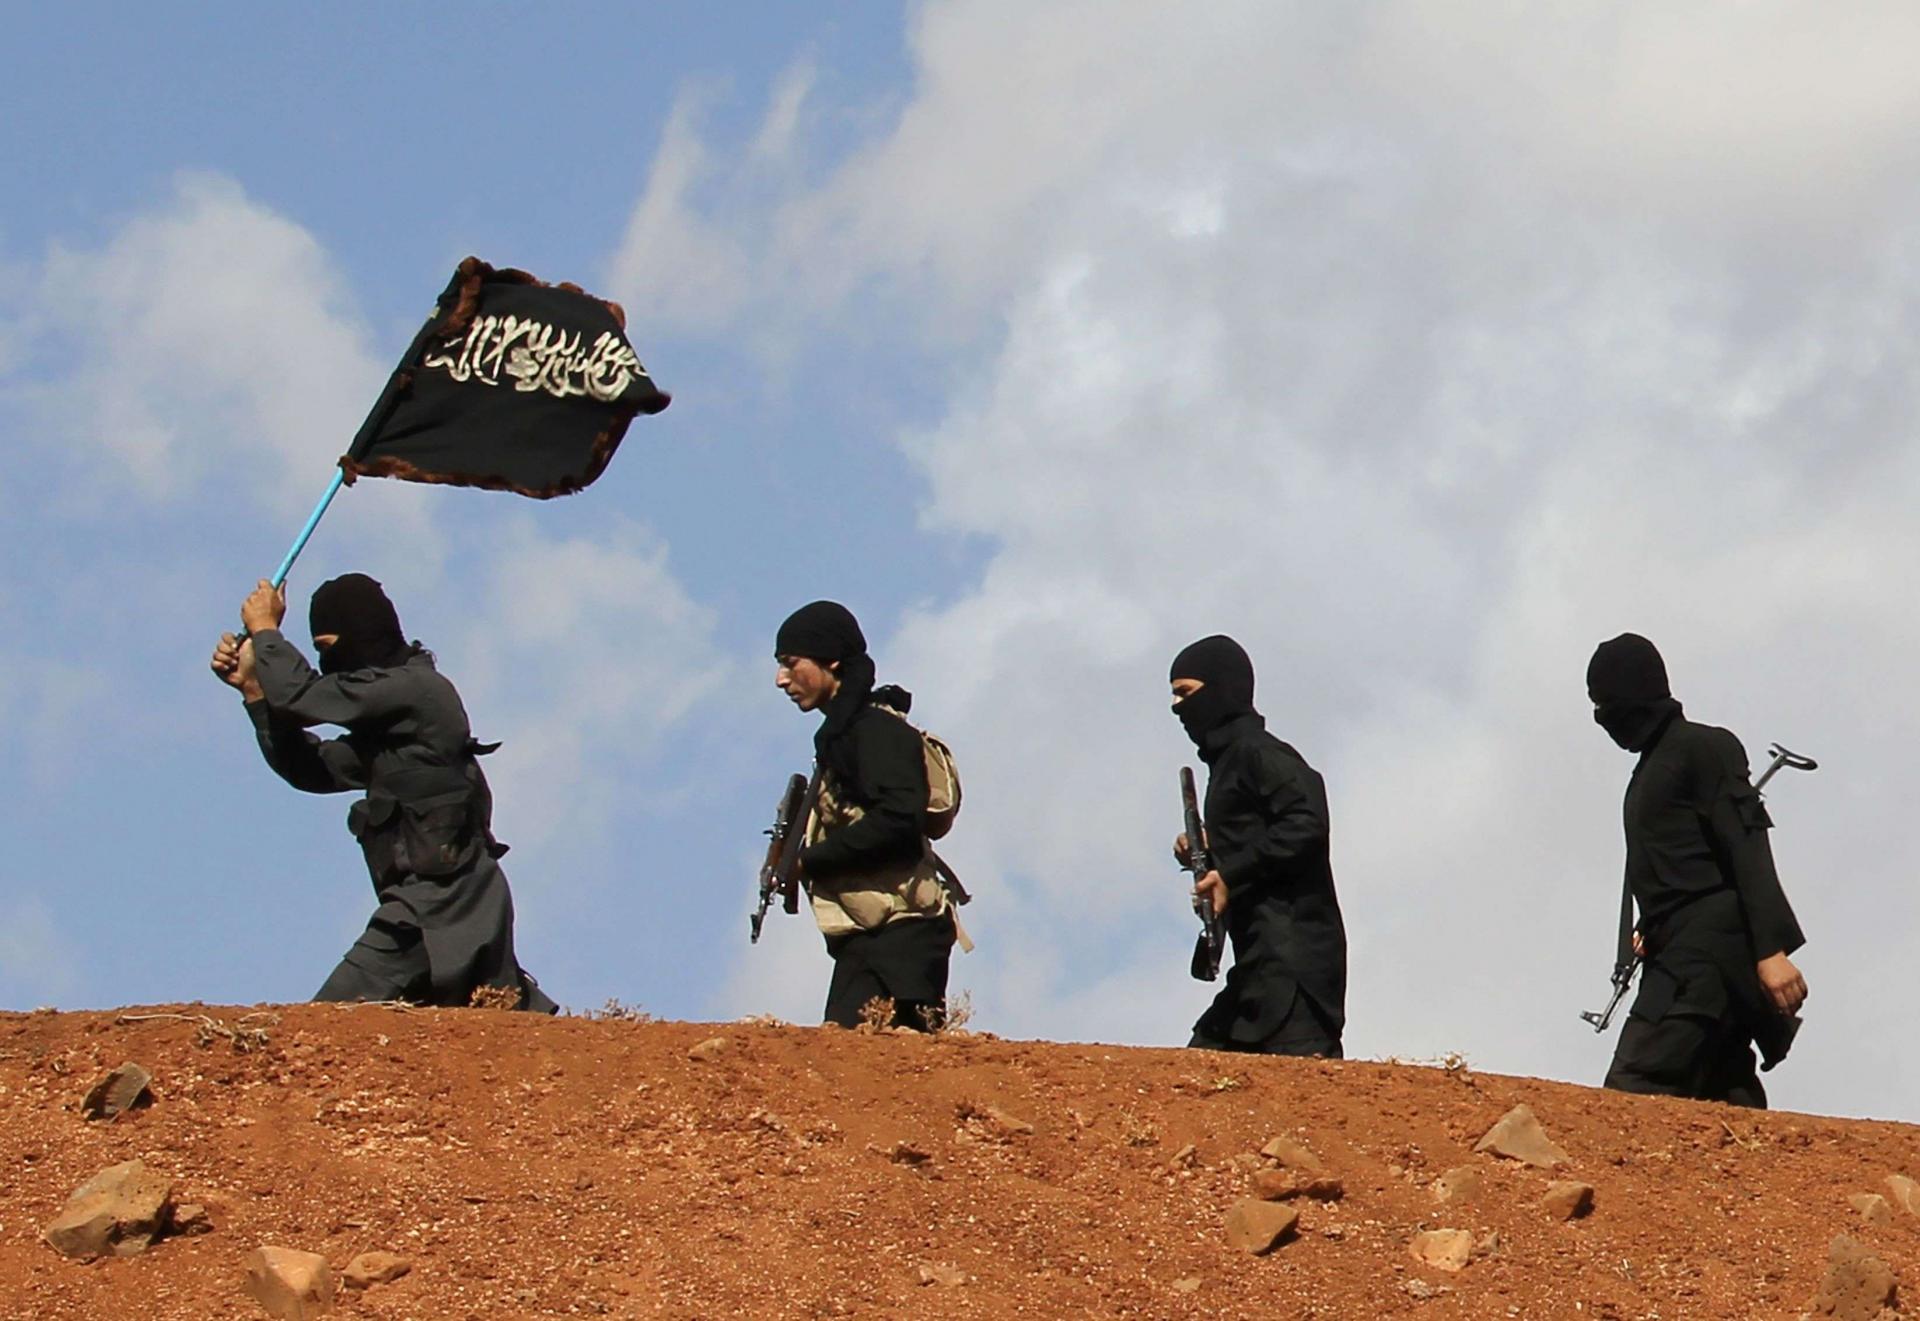 هجمات إرهابية متوالية في سوريا تثير مخاوف من عودة داعش